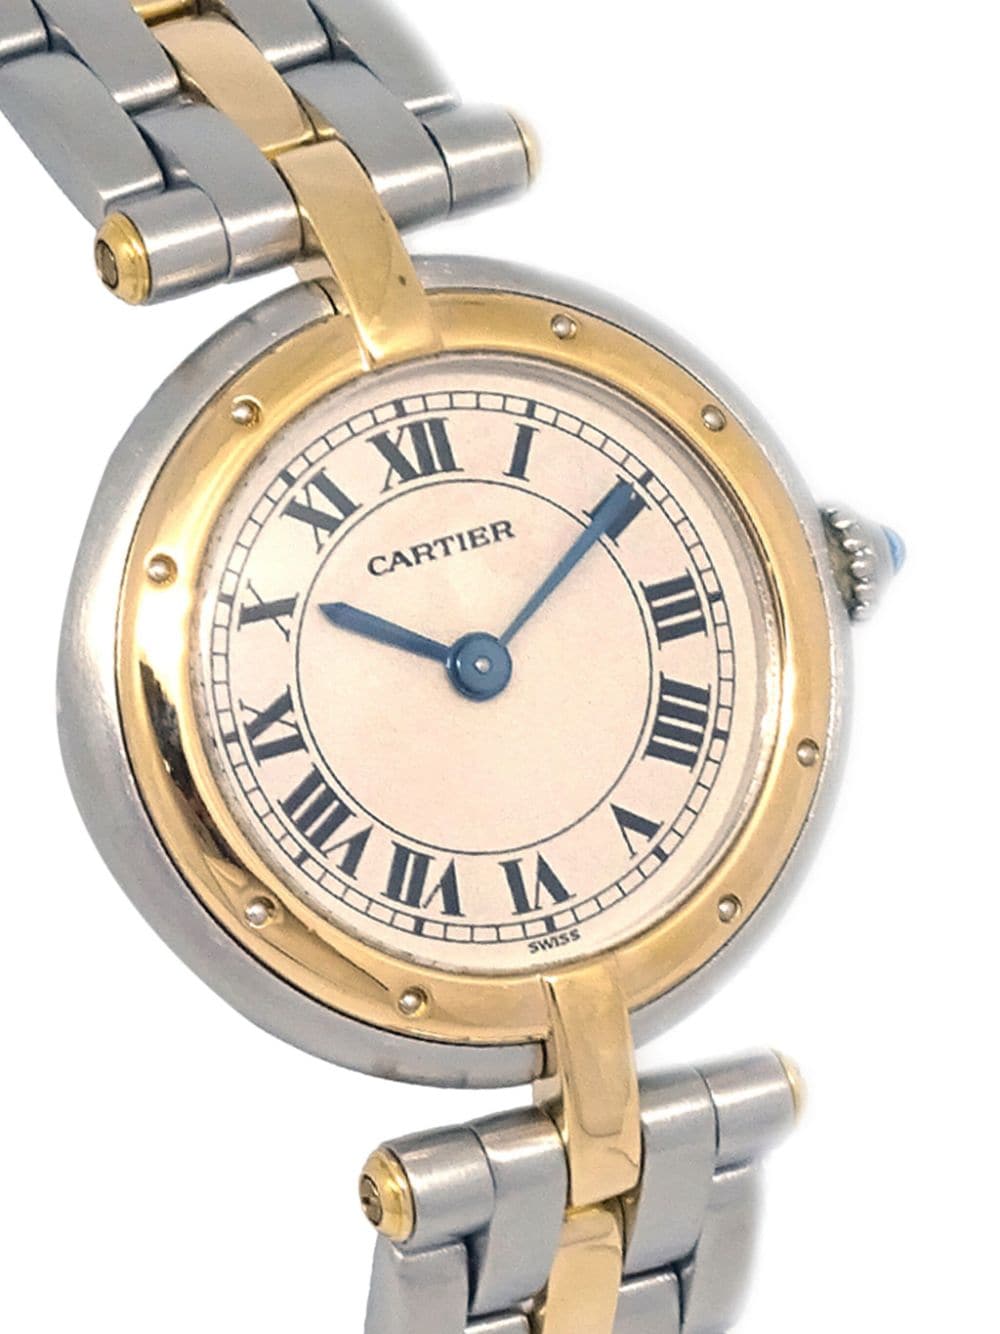 Cartier 1980-1990 pre-owned Vêndome 24mm horloge - Goud